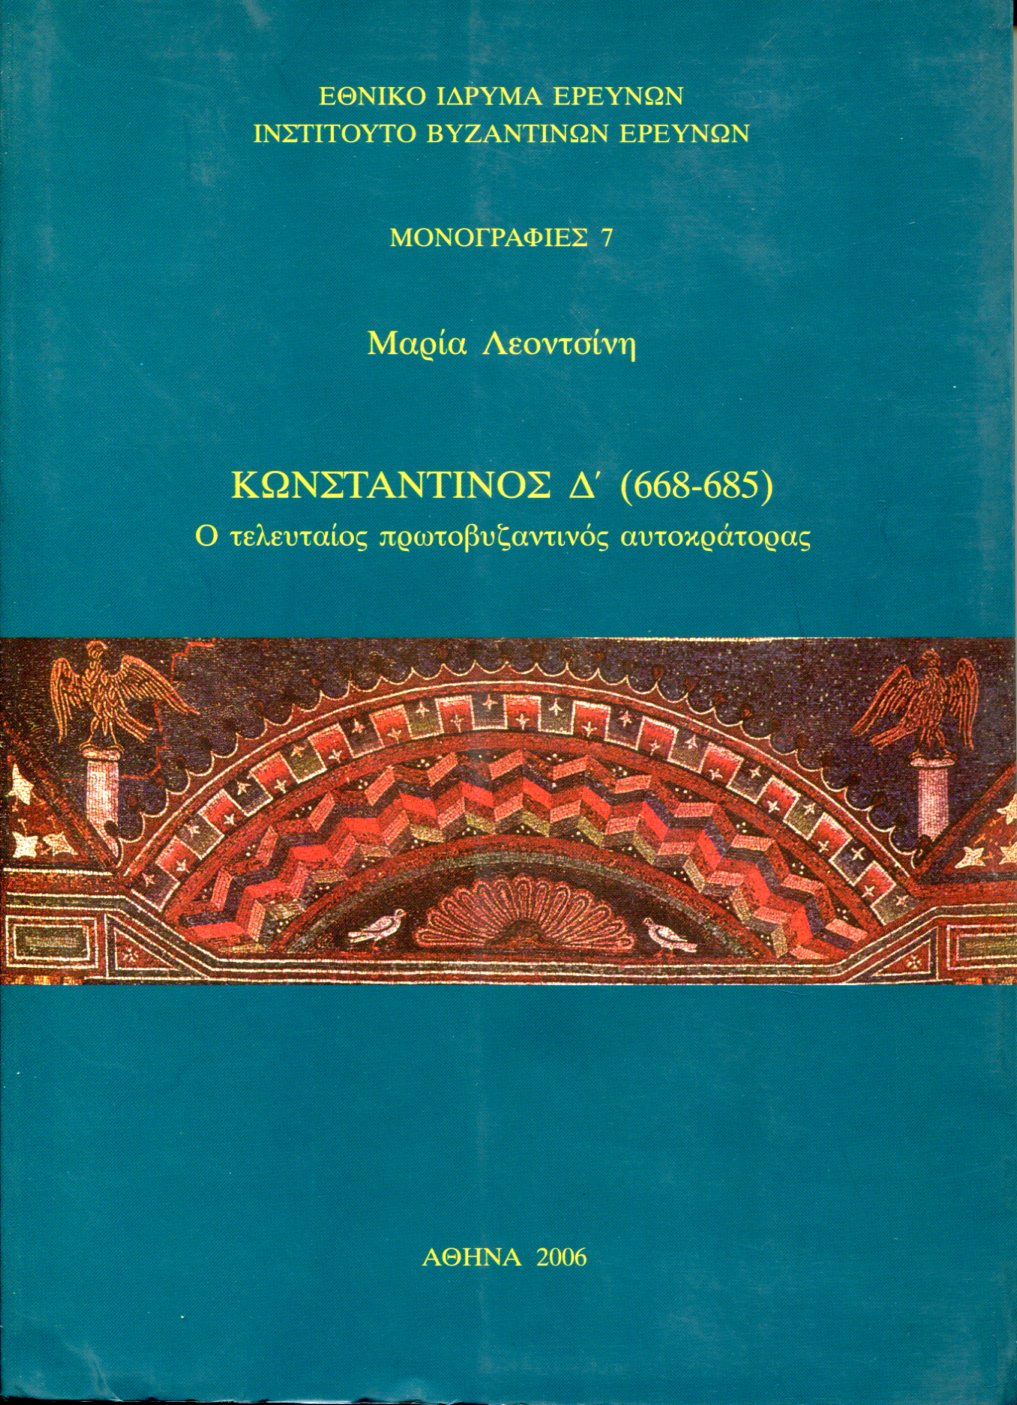 ΚΩΝΣΤΑΝΤΙΝΟΣ Δ΄ 668-685